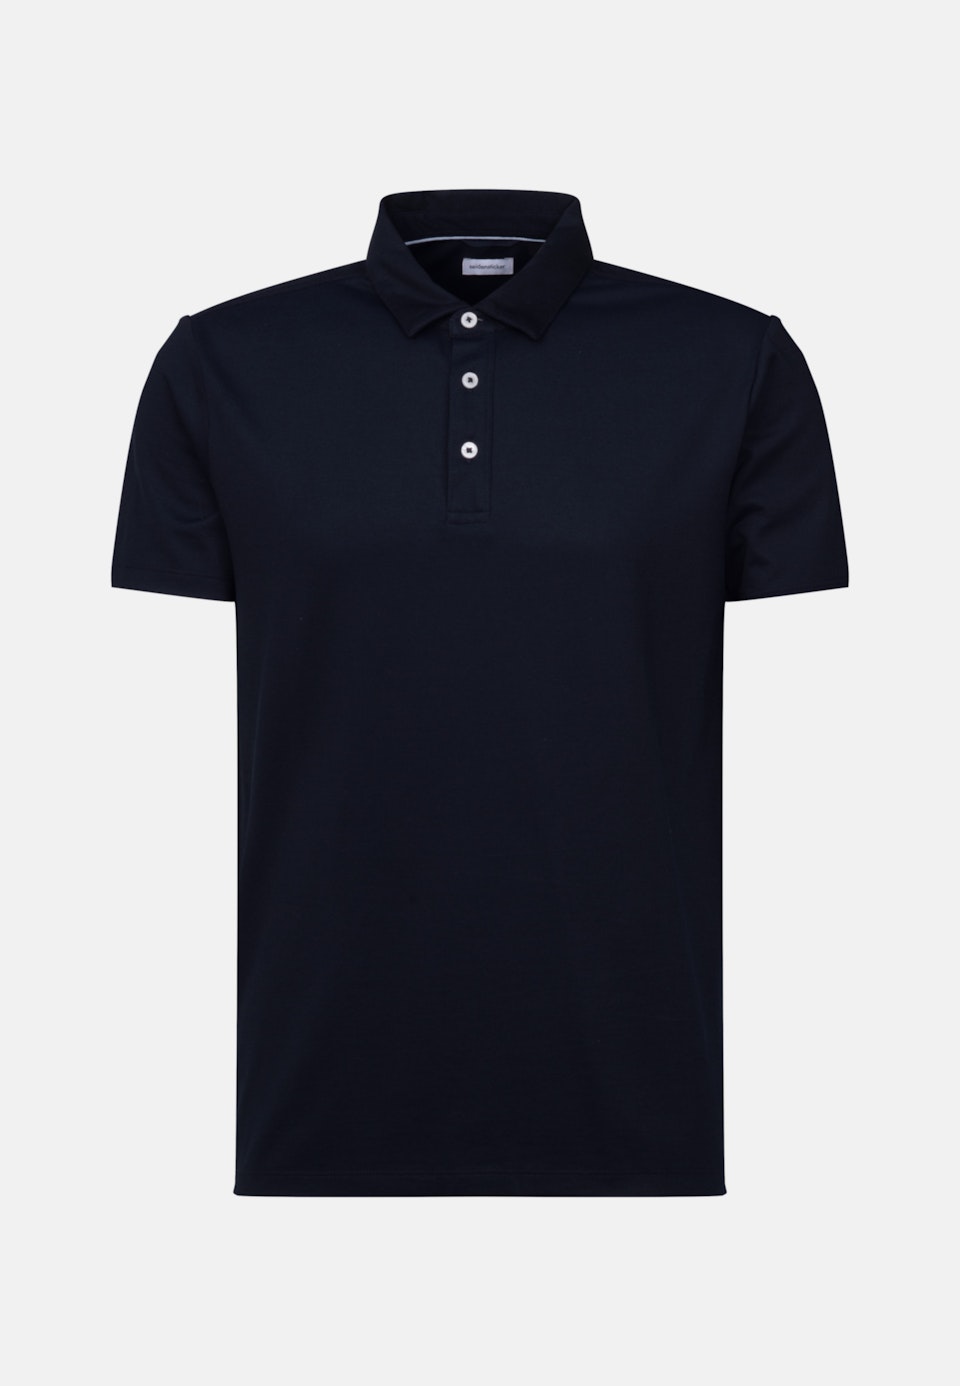 Kragen Polo-Shirt Tailliert (Slim-Fit) in Dunkelblau |  Seidensticker Onlineshop